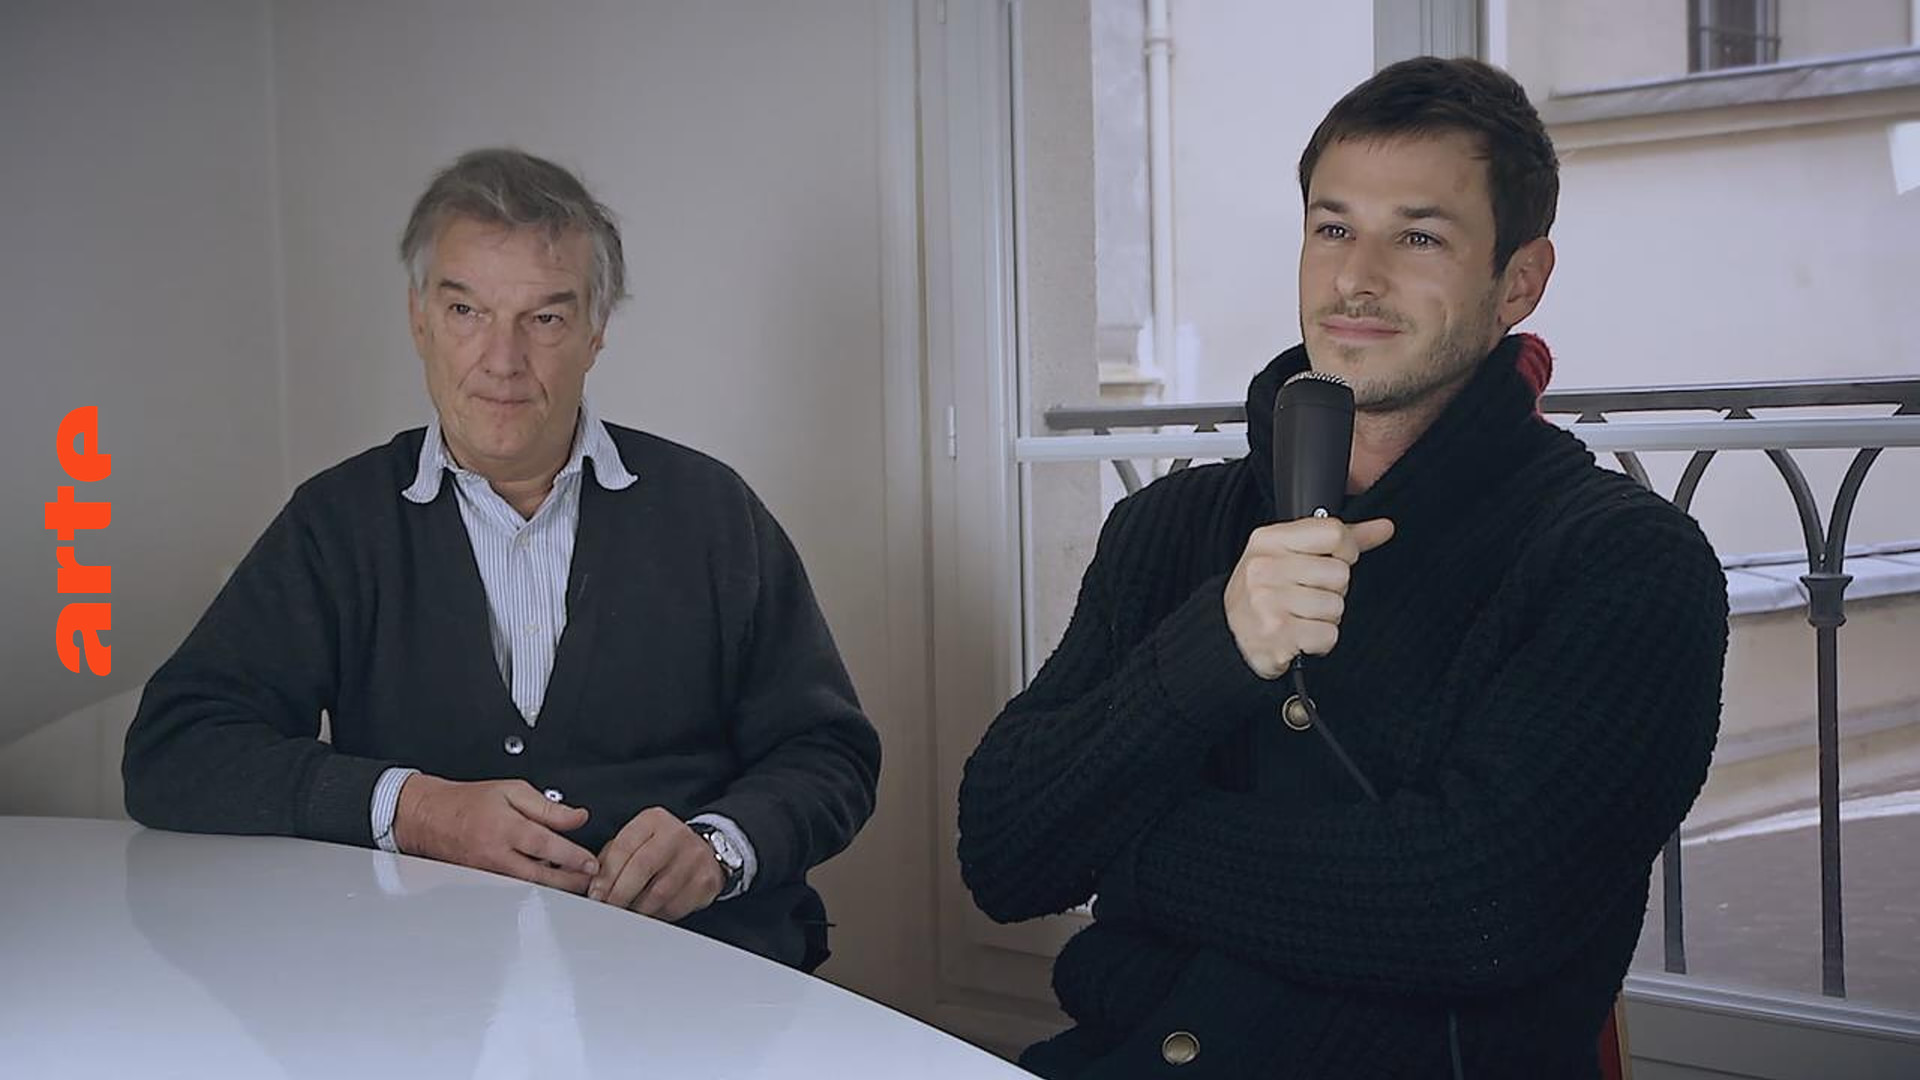 Eva - Interview mit Benoit Jacquot und Gaspard Ulliel